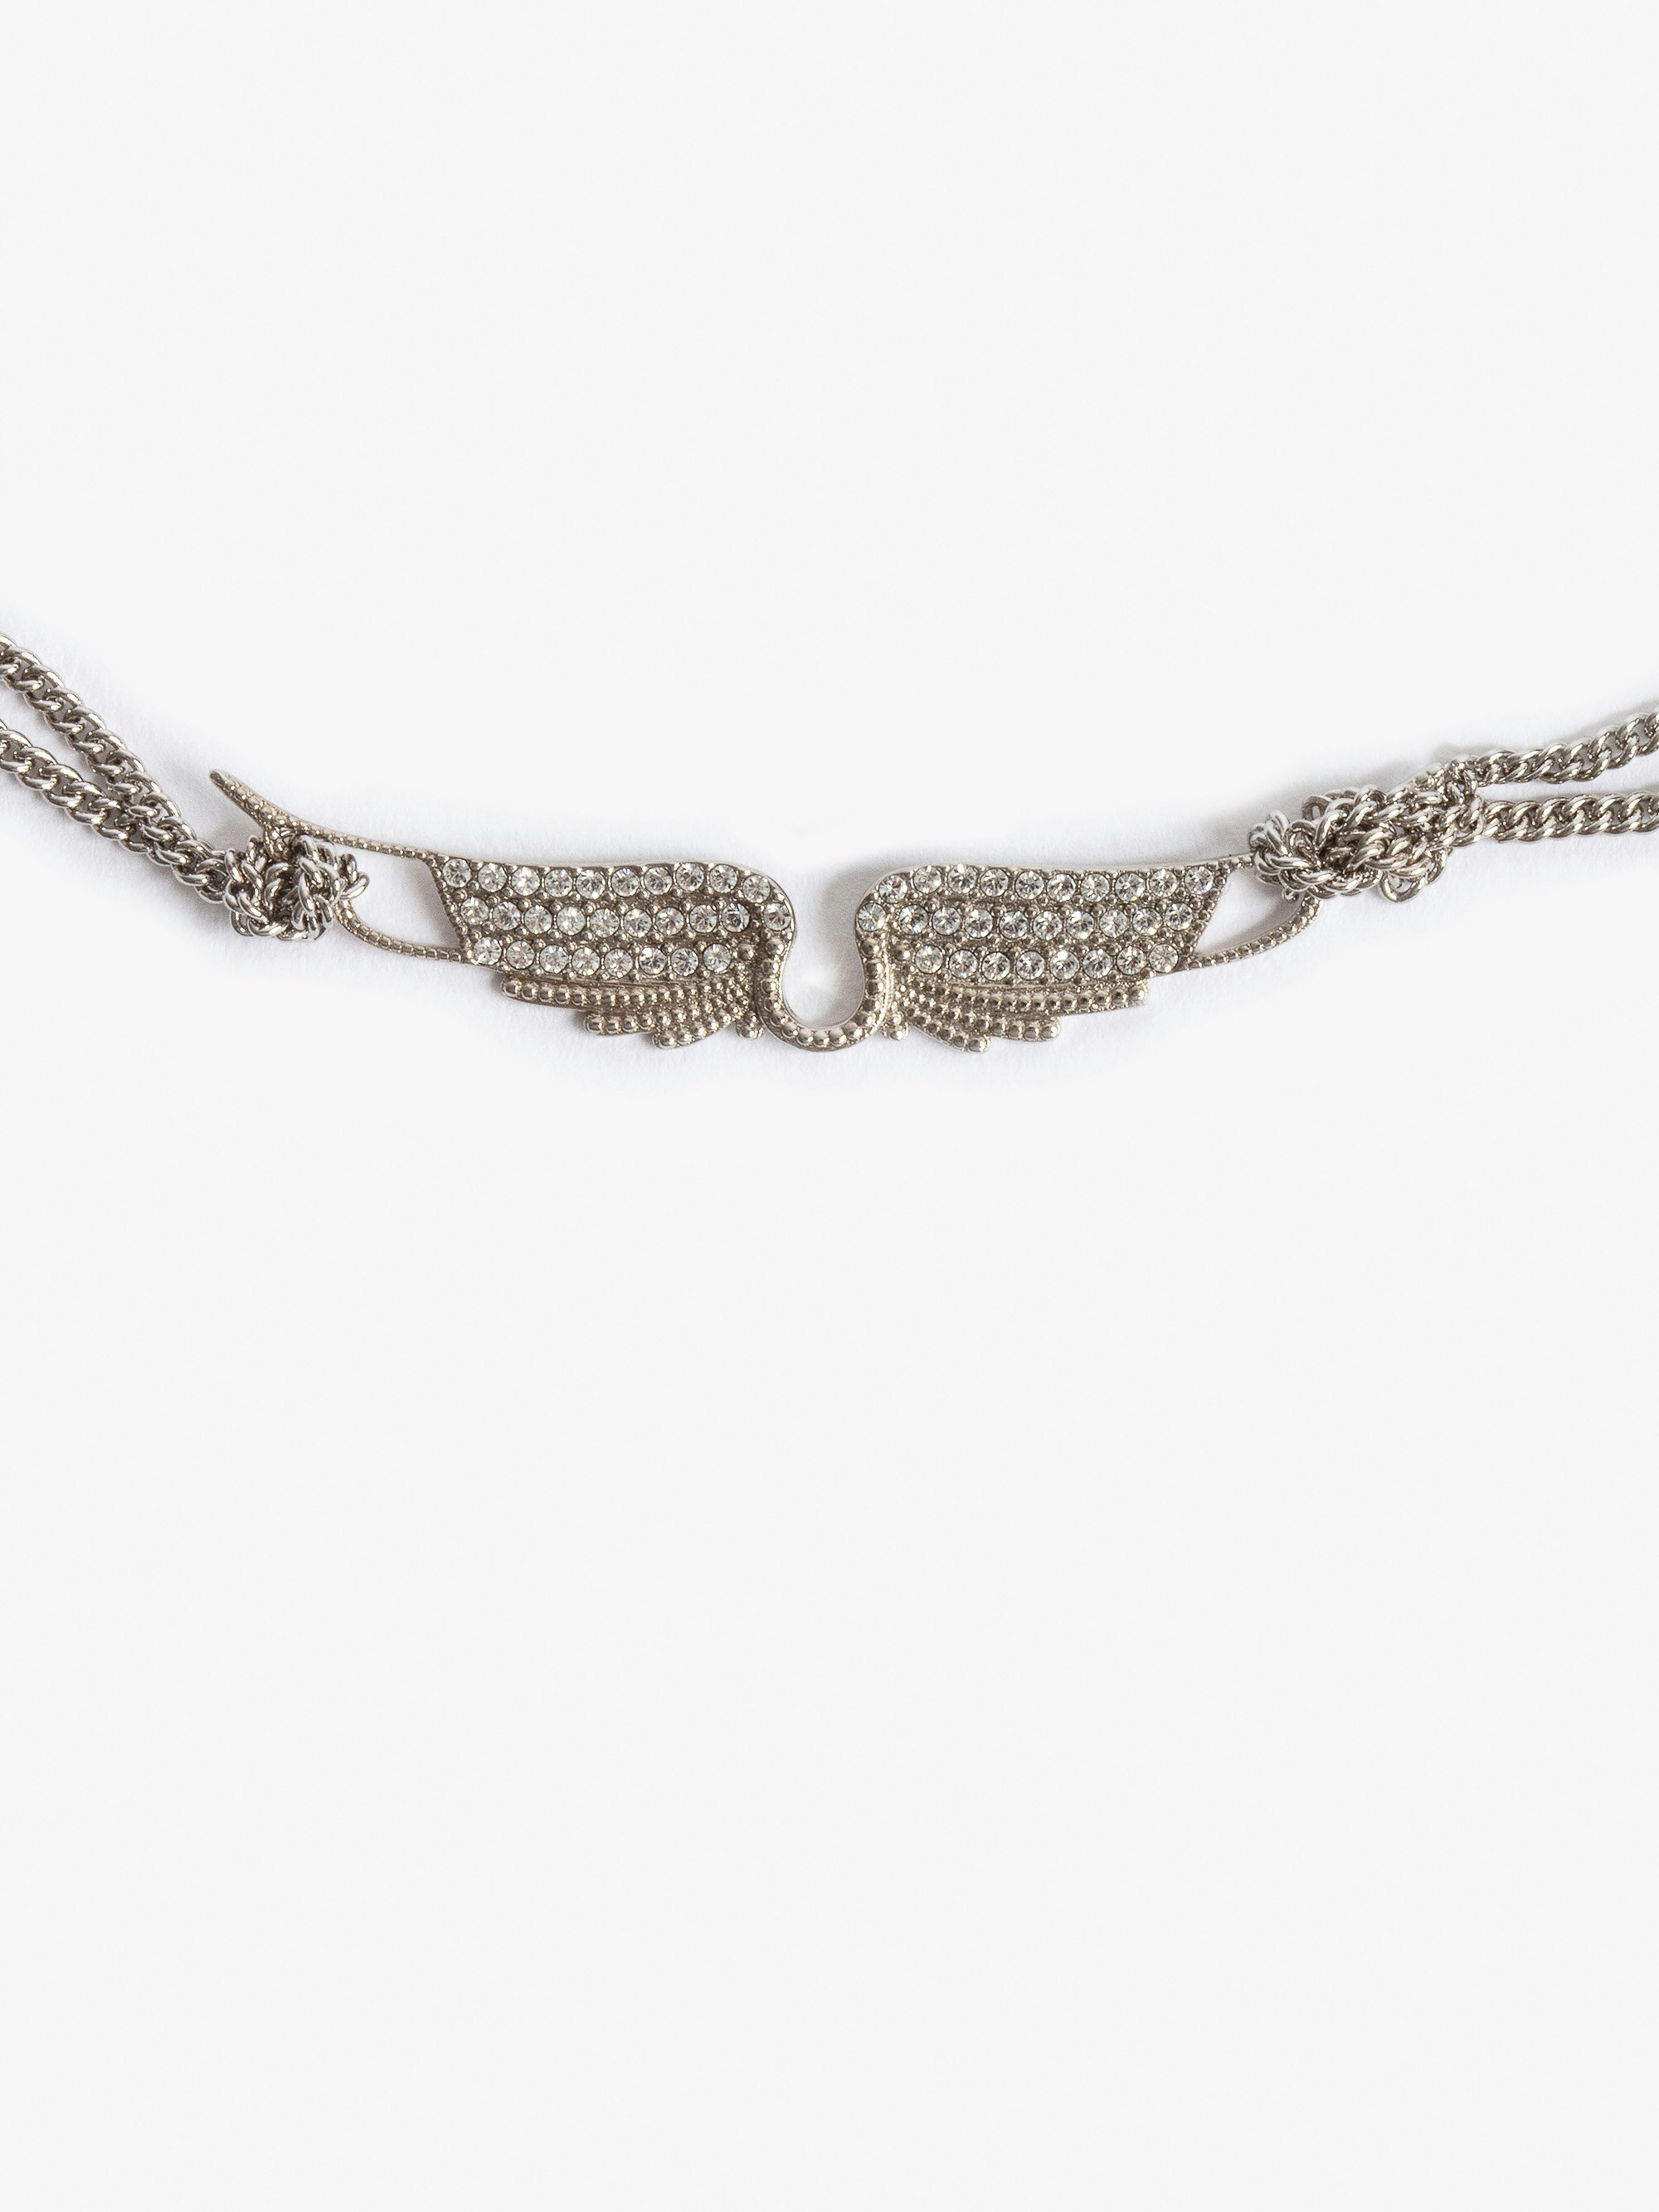 Collana Rock Chocker - Collana corta in ottone argento con ciondolo ali incastonato di strass.